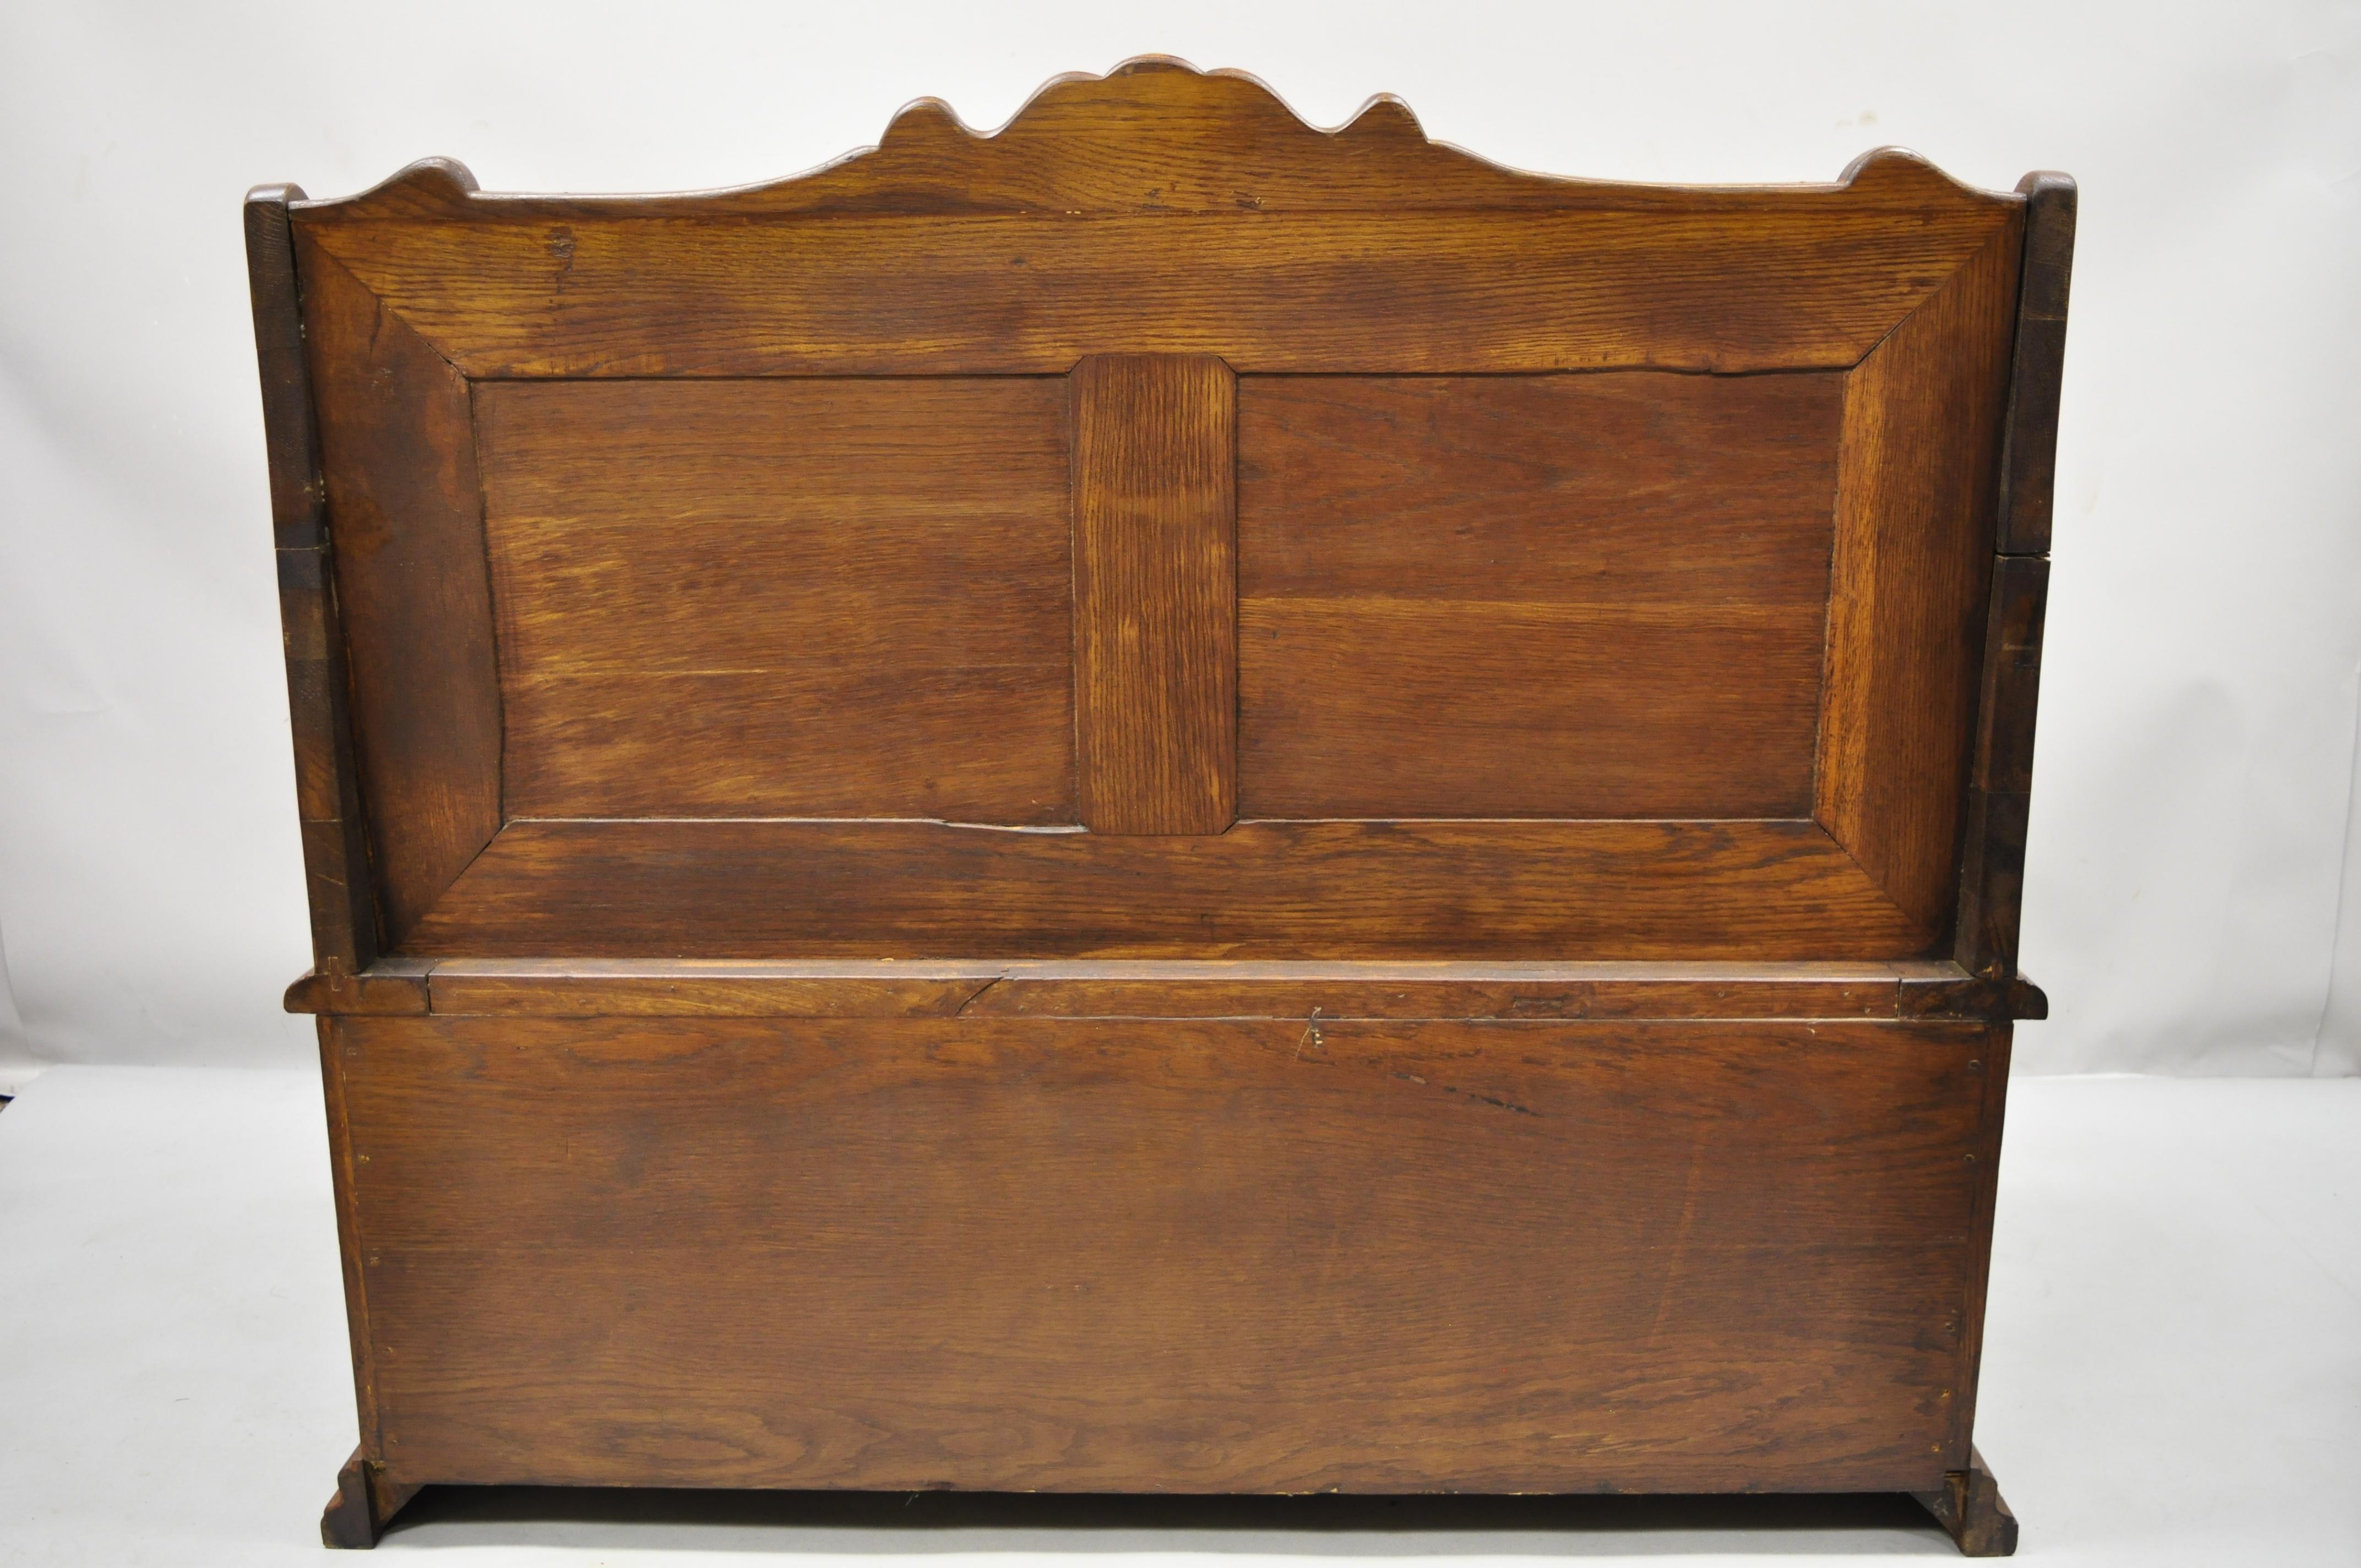 Antique English Jacobean Renaissance Revival Oak Wood Pew Bench with Storage Lid 4